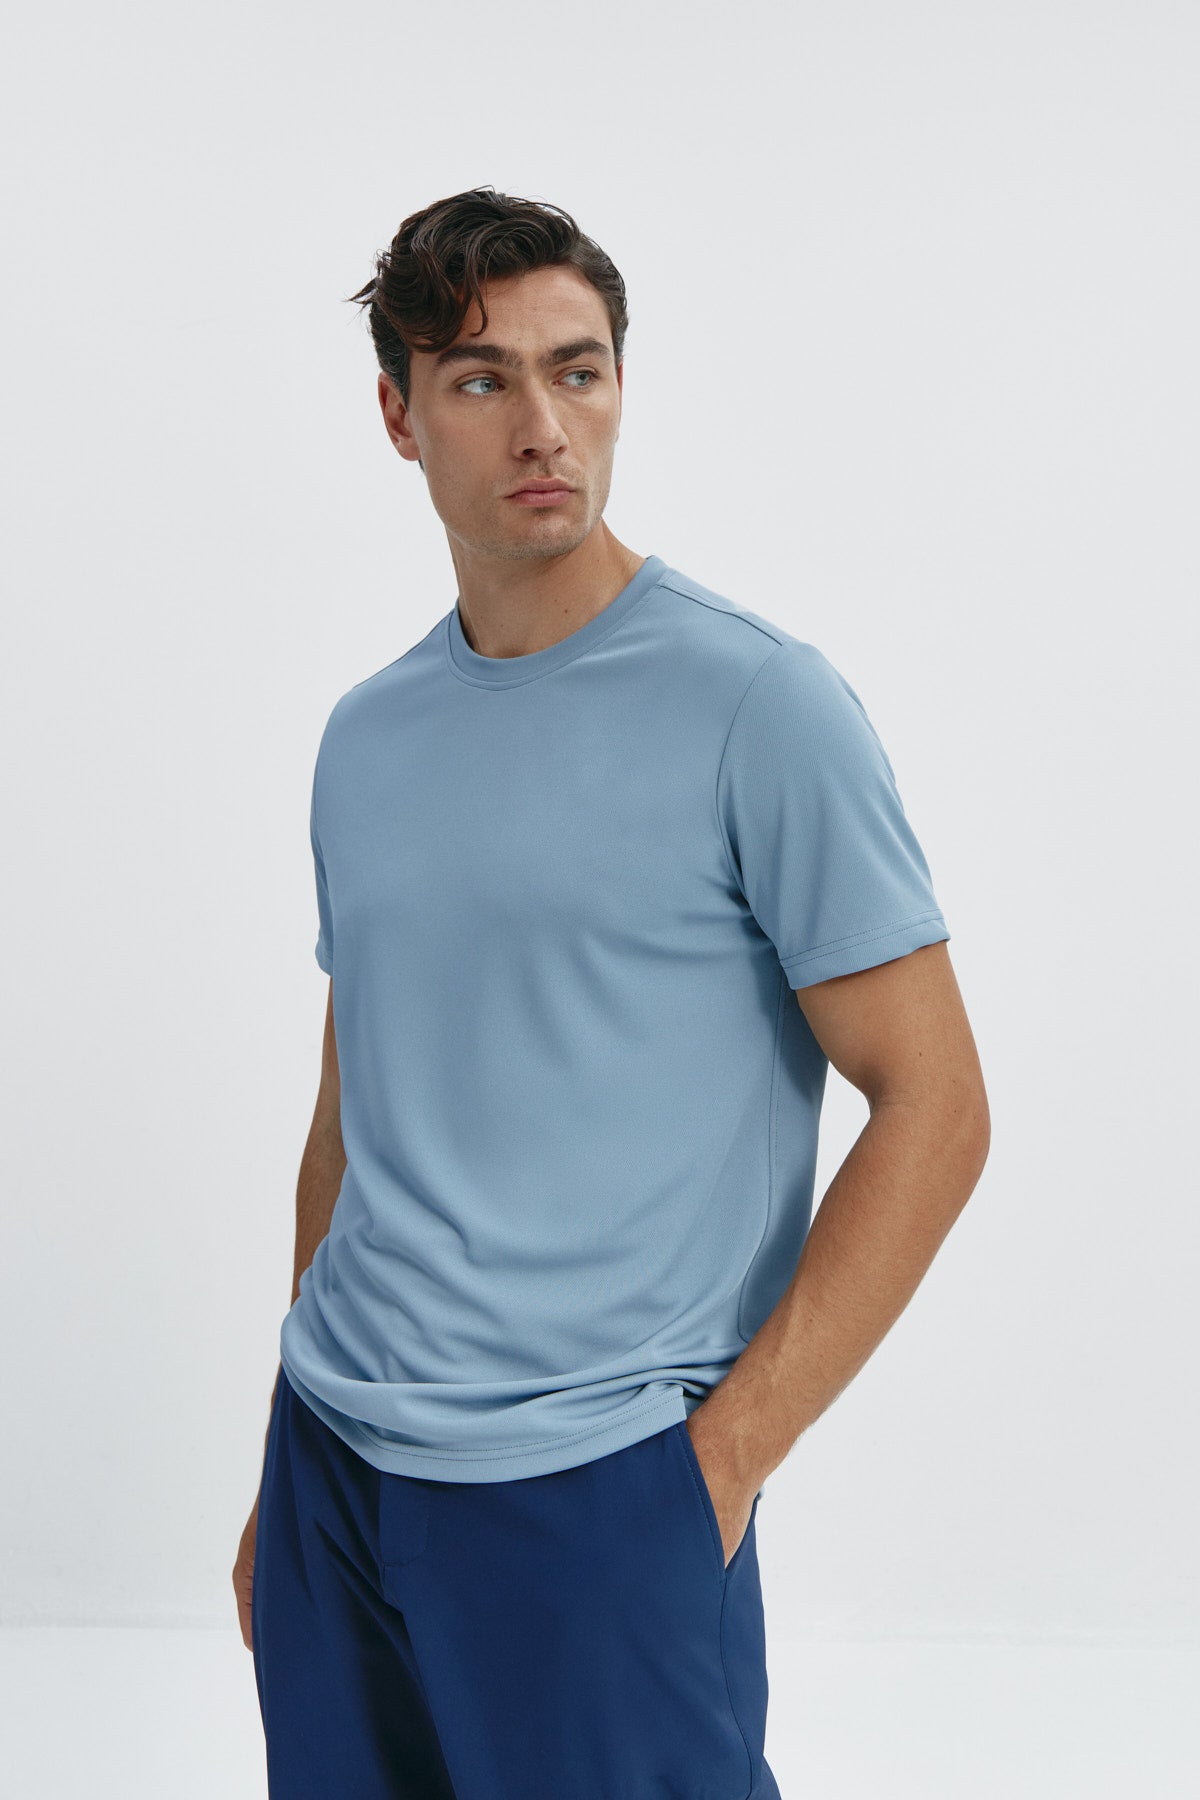 Camiseta de hombre en azul medianoche de Sepiia, estilo y comodidad en una prenda duradera. Foto flexibilidad